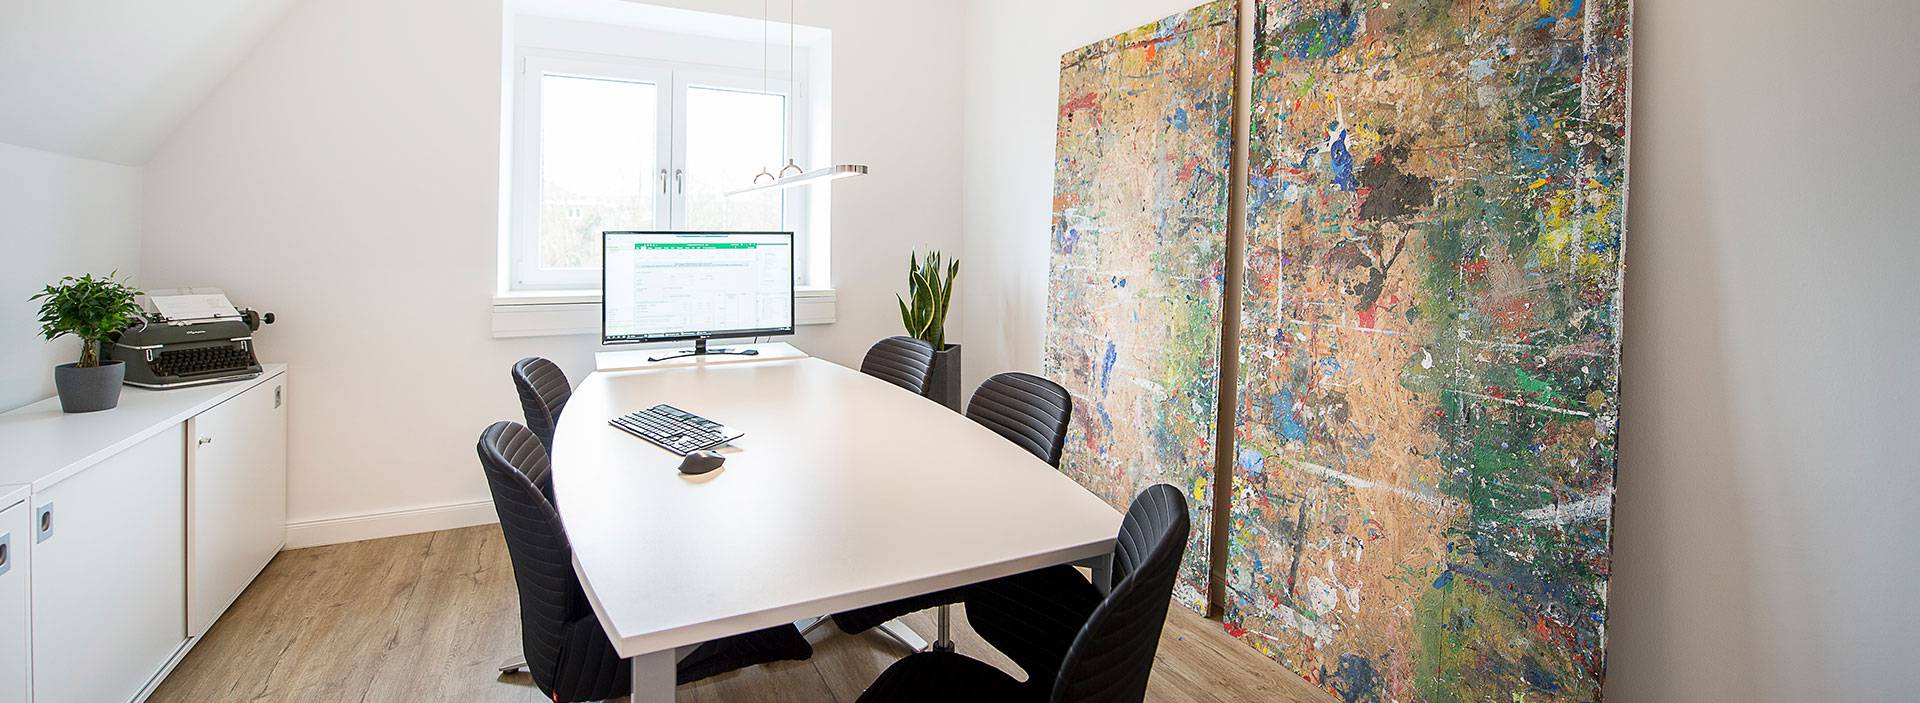 Büro mit Konferenztisch und großen Wandgemälden